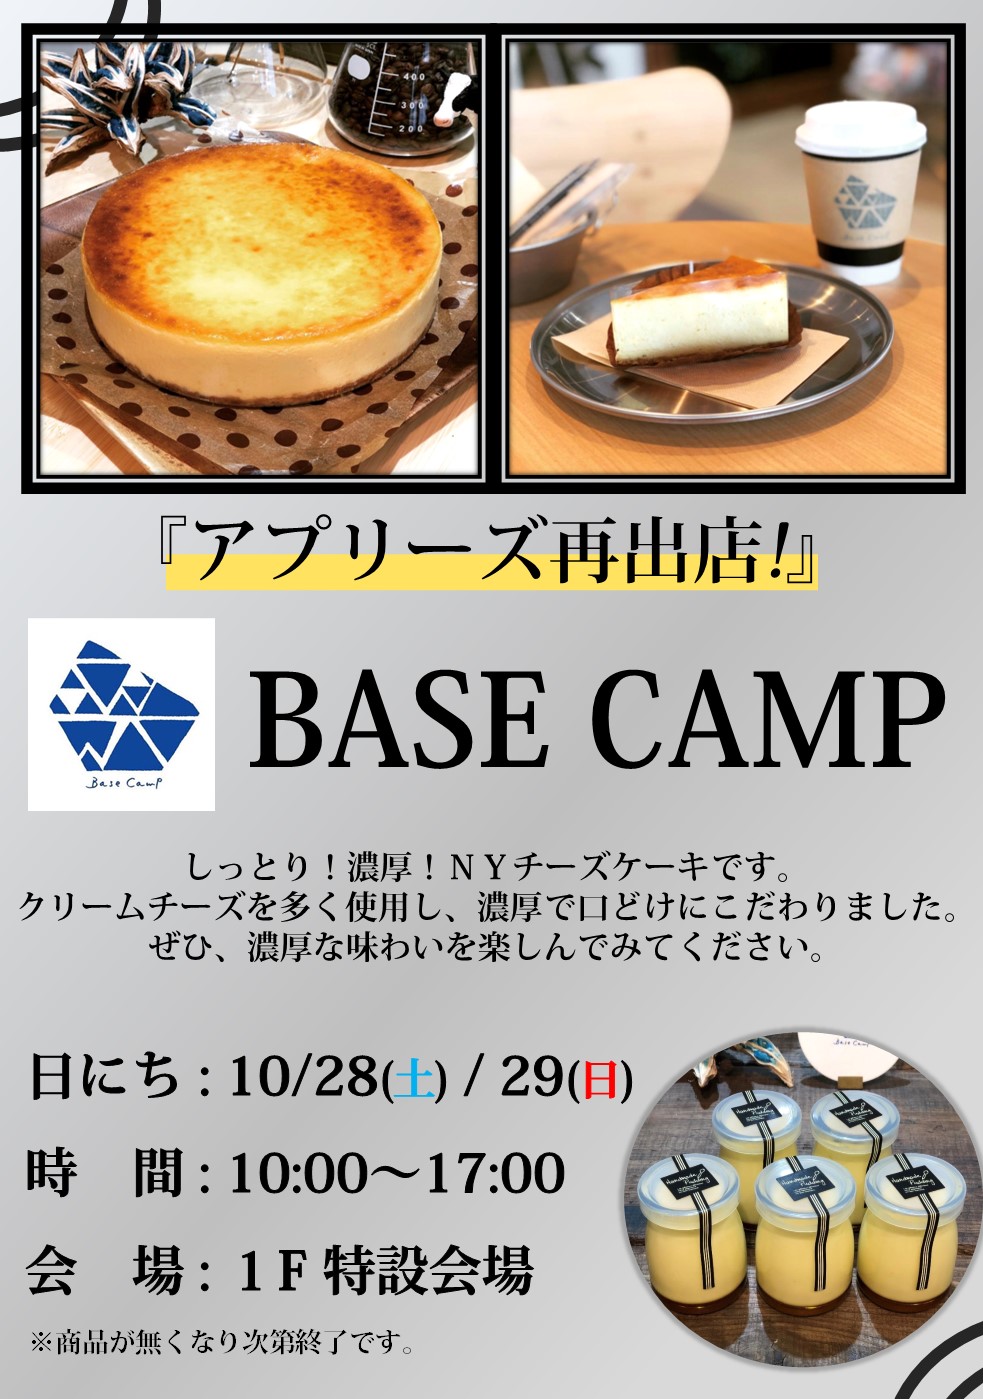 【終了しました】アプリーズ再出店!!「BASE CAMP」